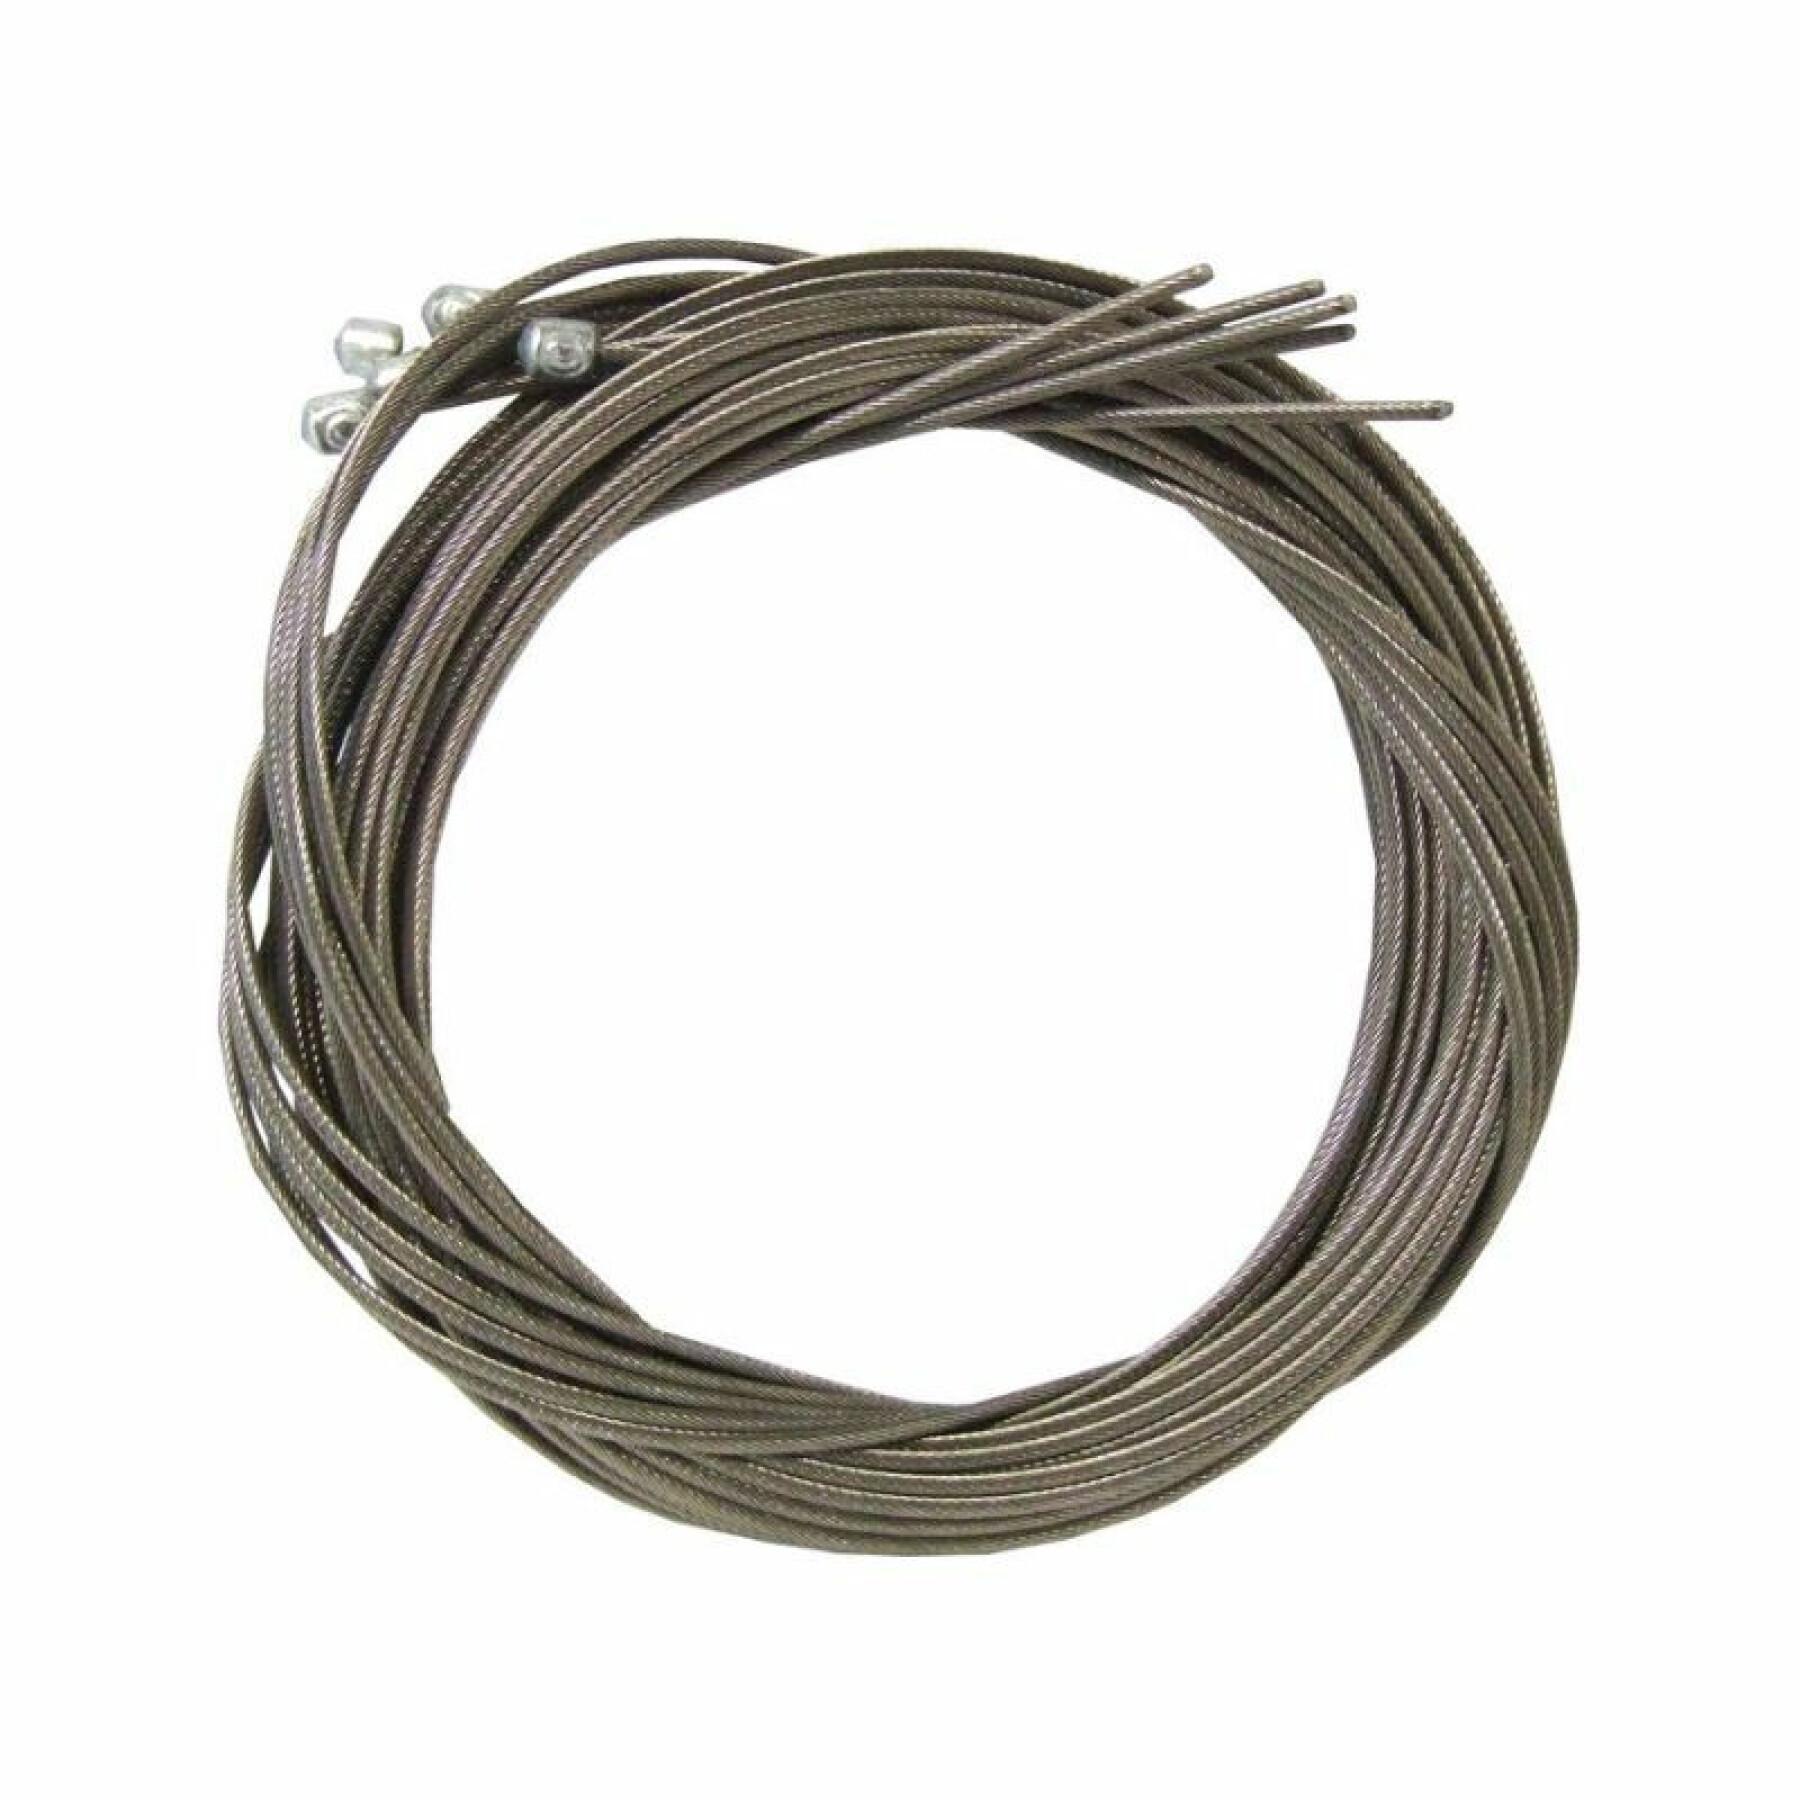 Kabel för främre växelförare Campagnolo Niro Ergopower 1.2x1.600 mm